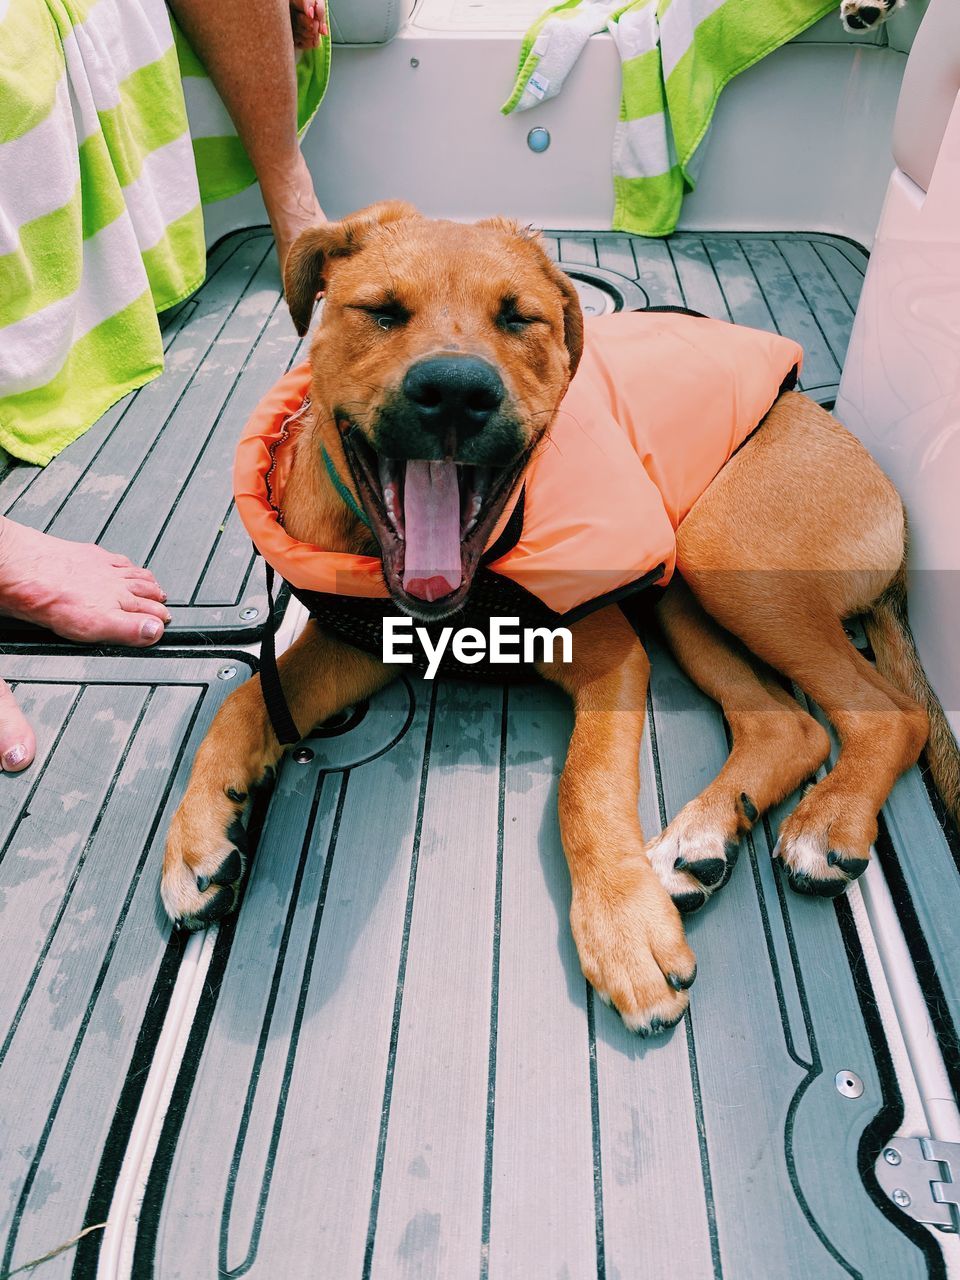 Dog yawning on a boat